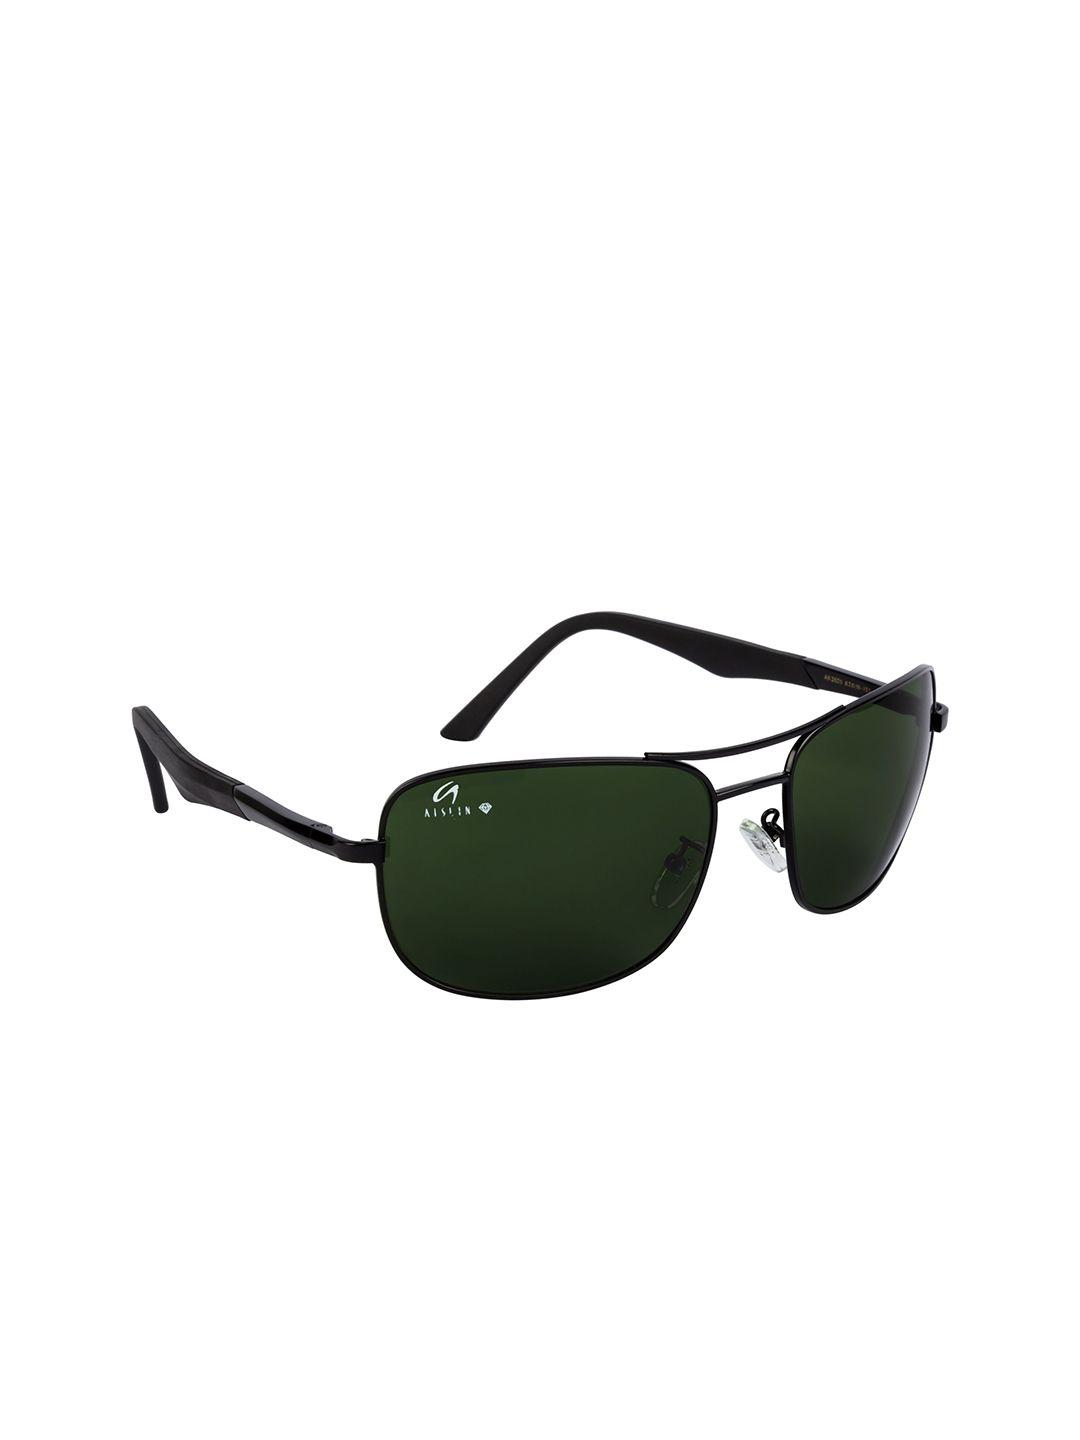 aislin men dark green wayfarer sunglasses 12758-5-as-3525